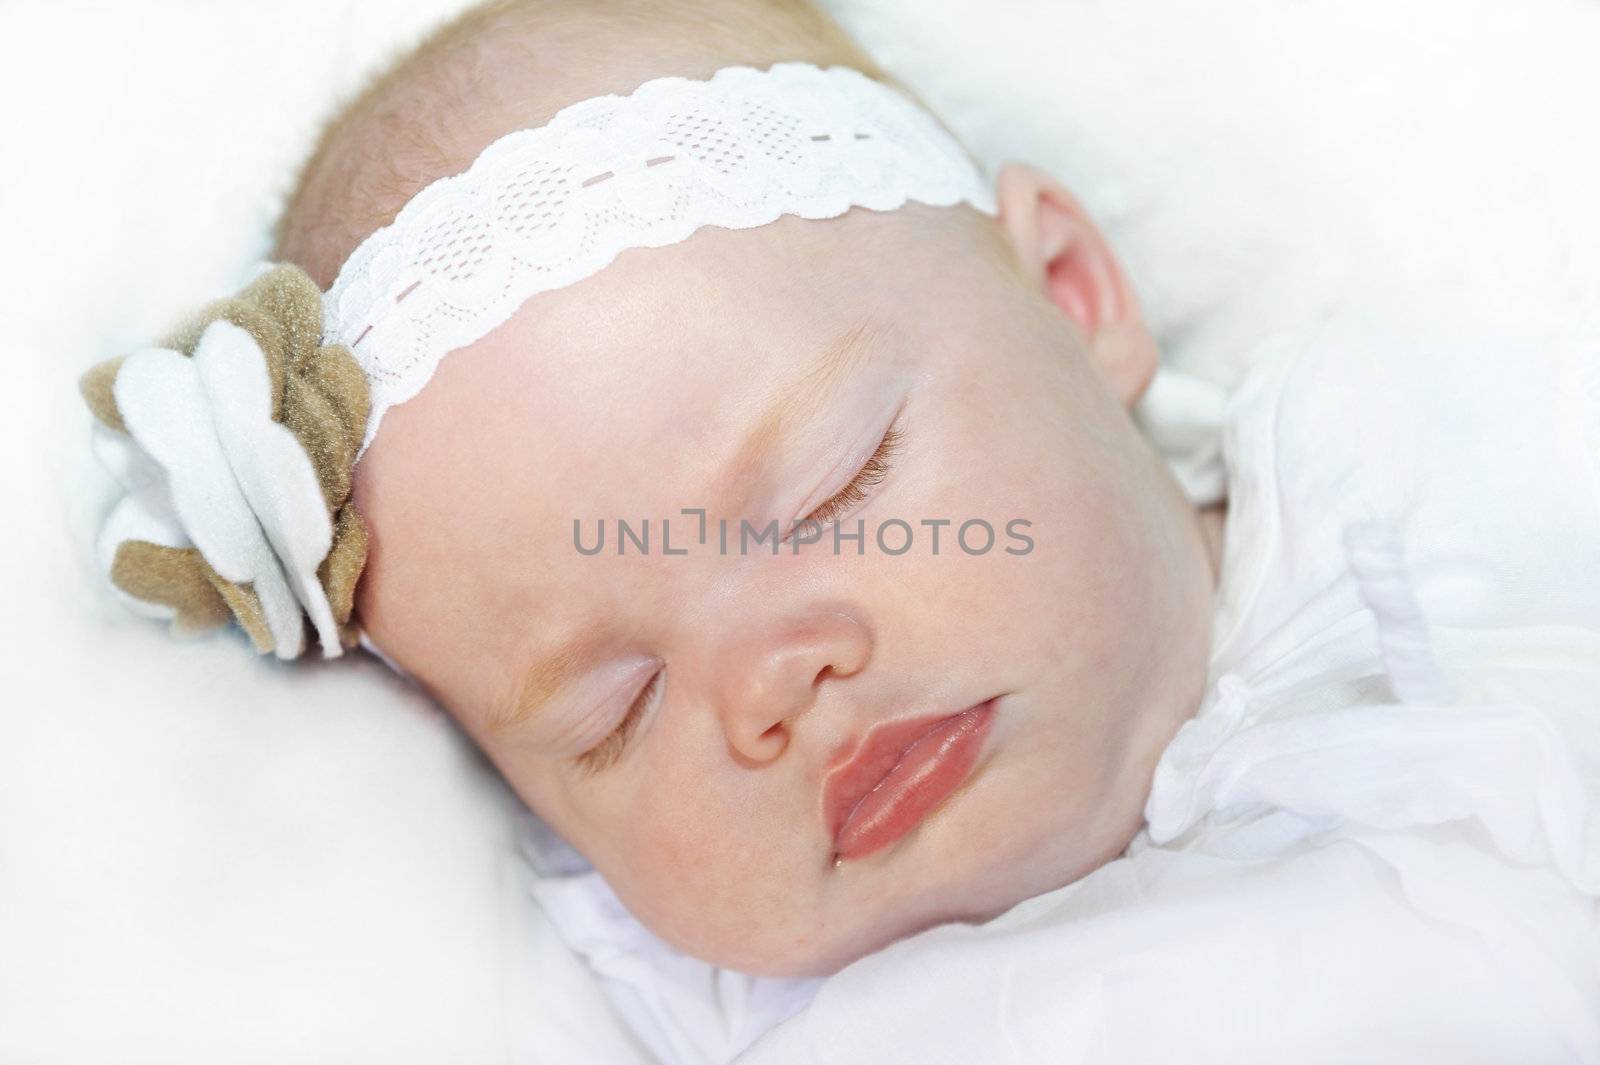 Adorable baby girl with headband  sleeping peacefully